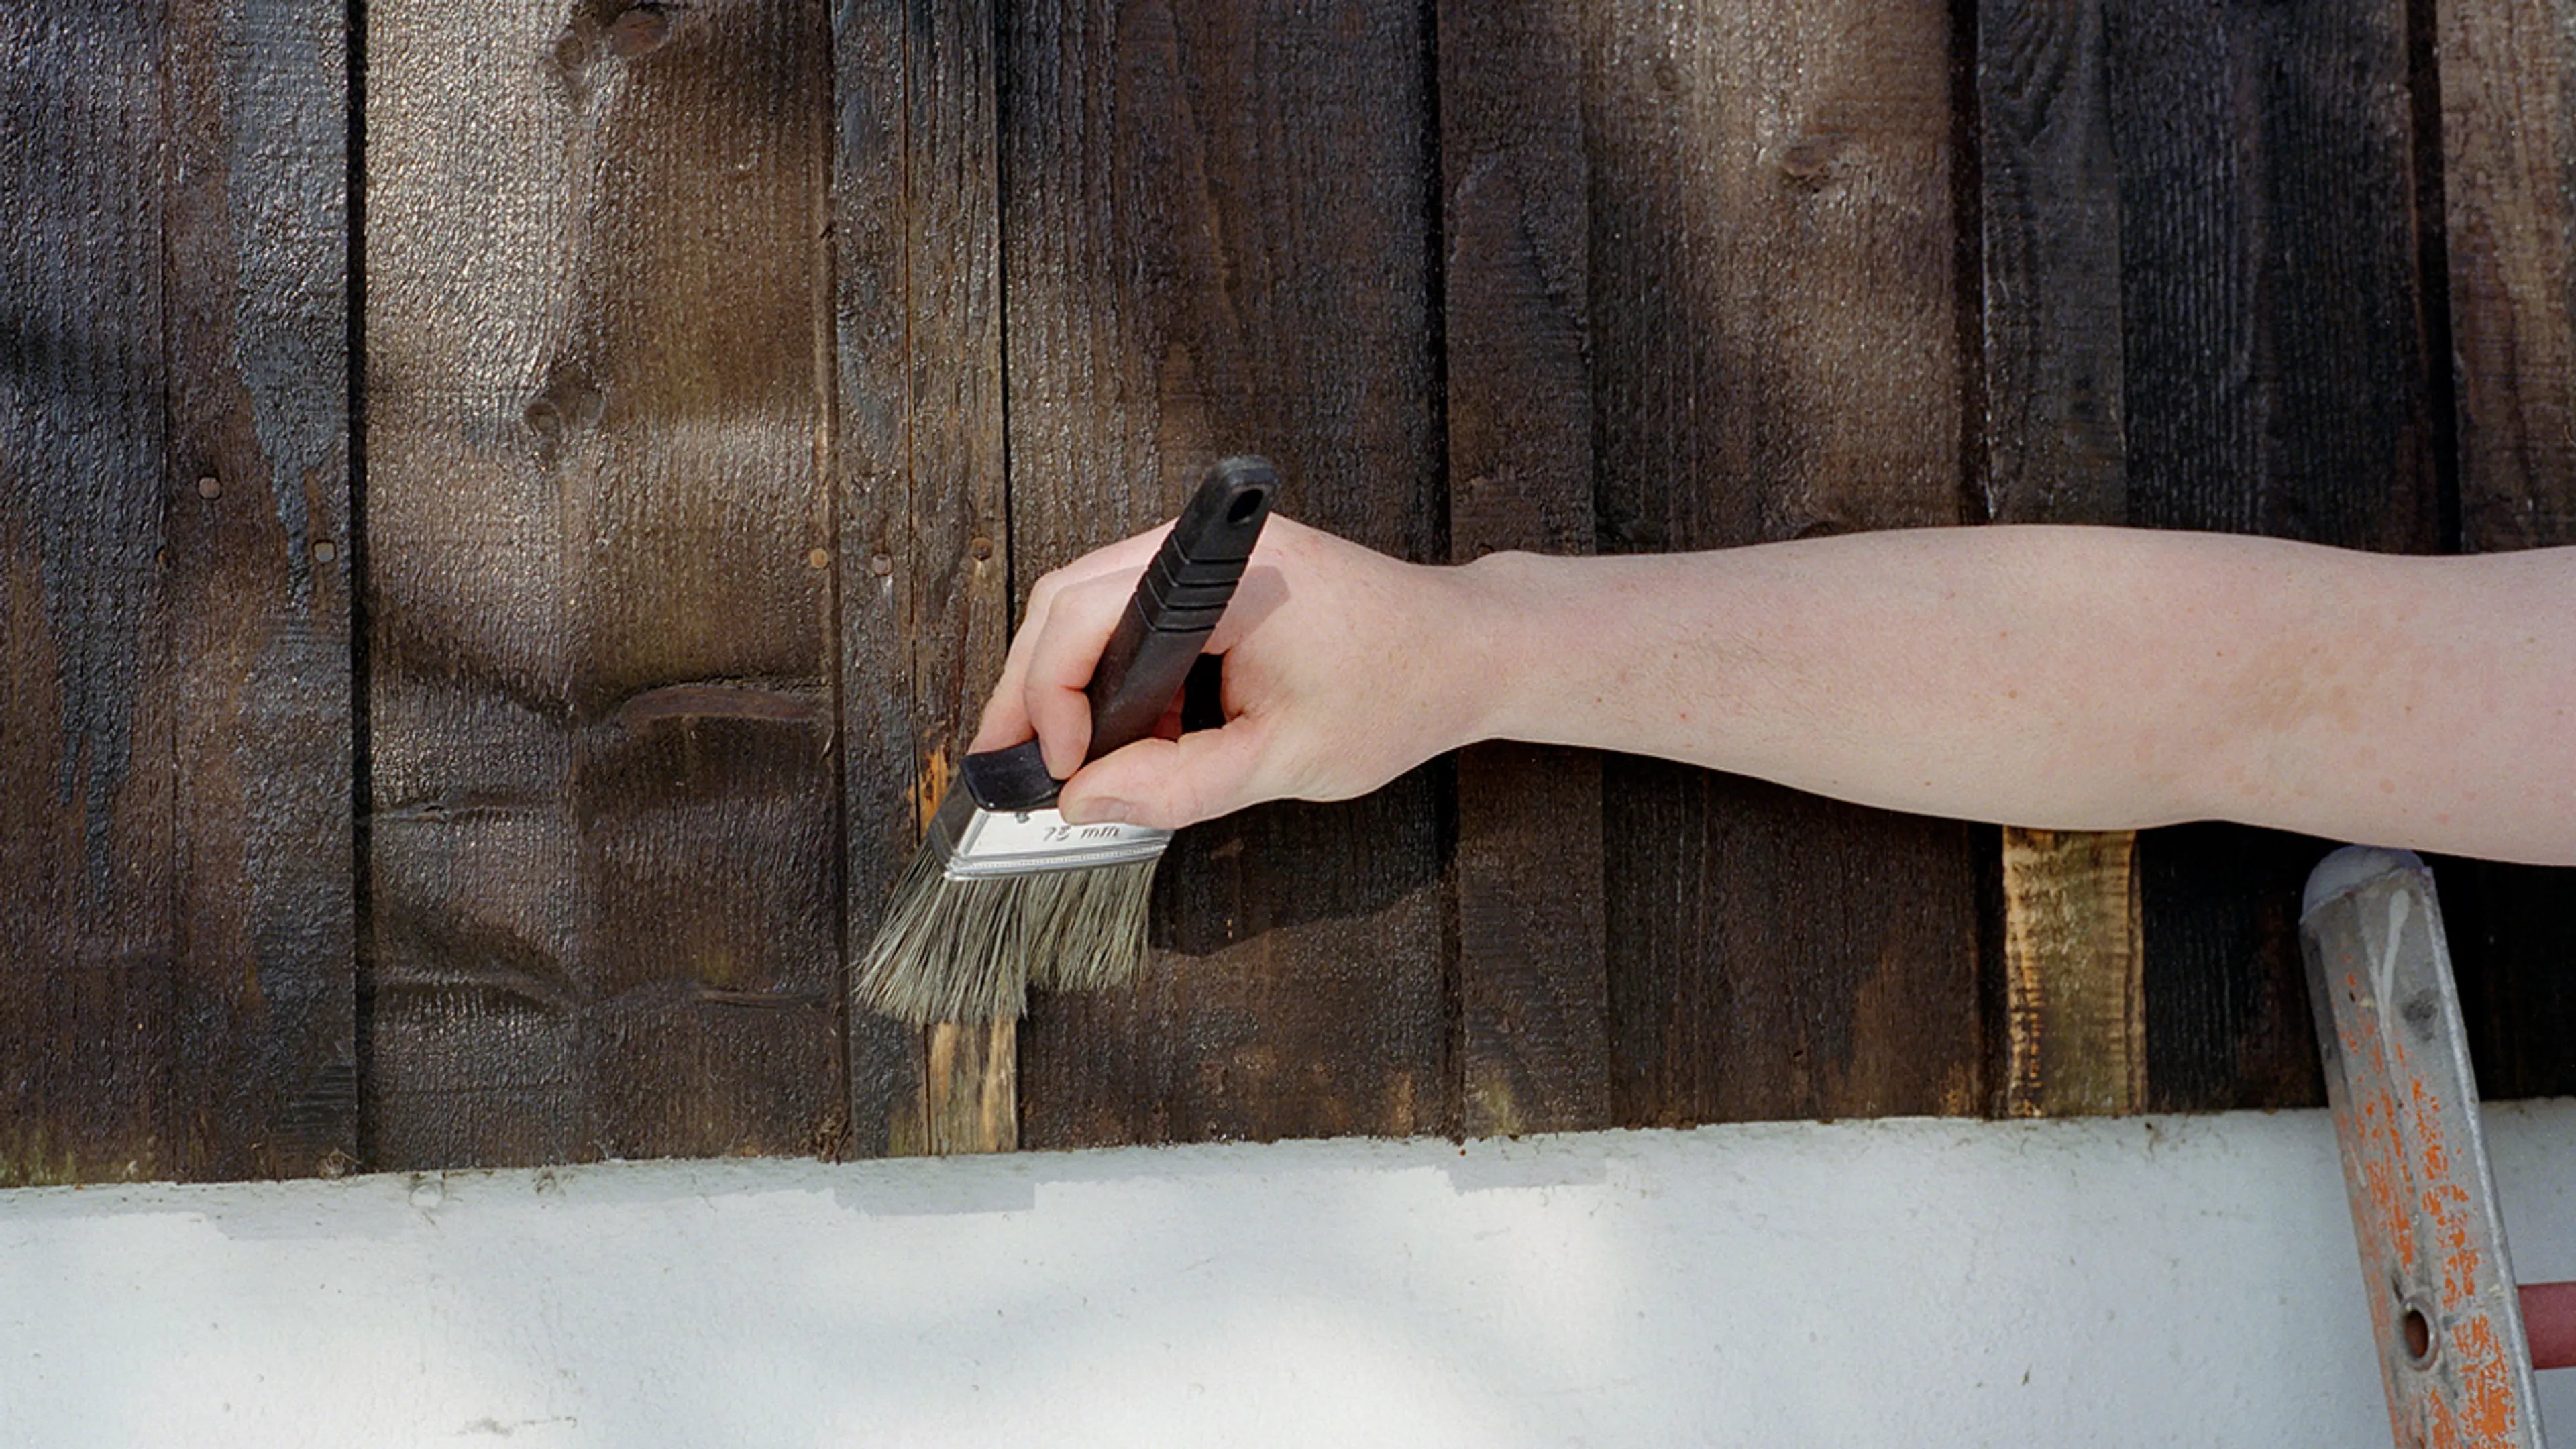 Nærbilde av hånd med pensel som skal male hus utvendig.